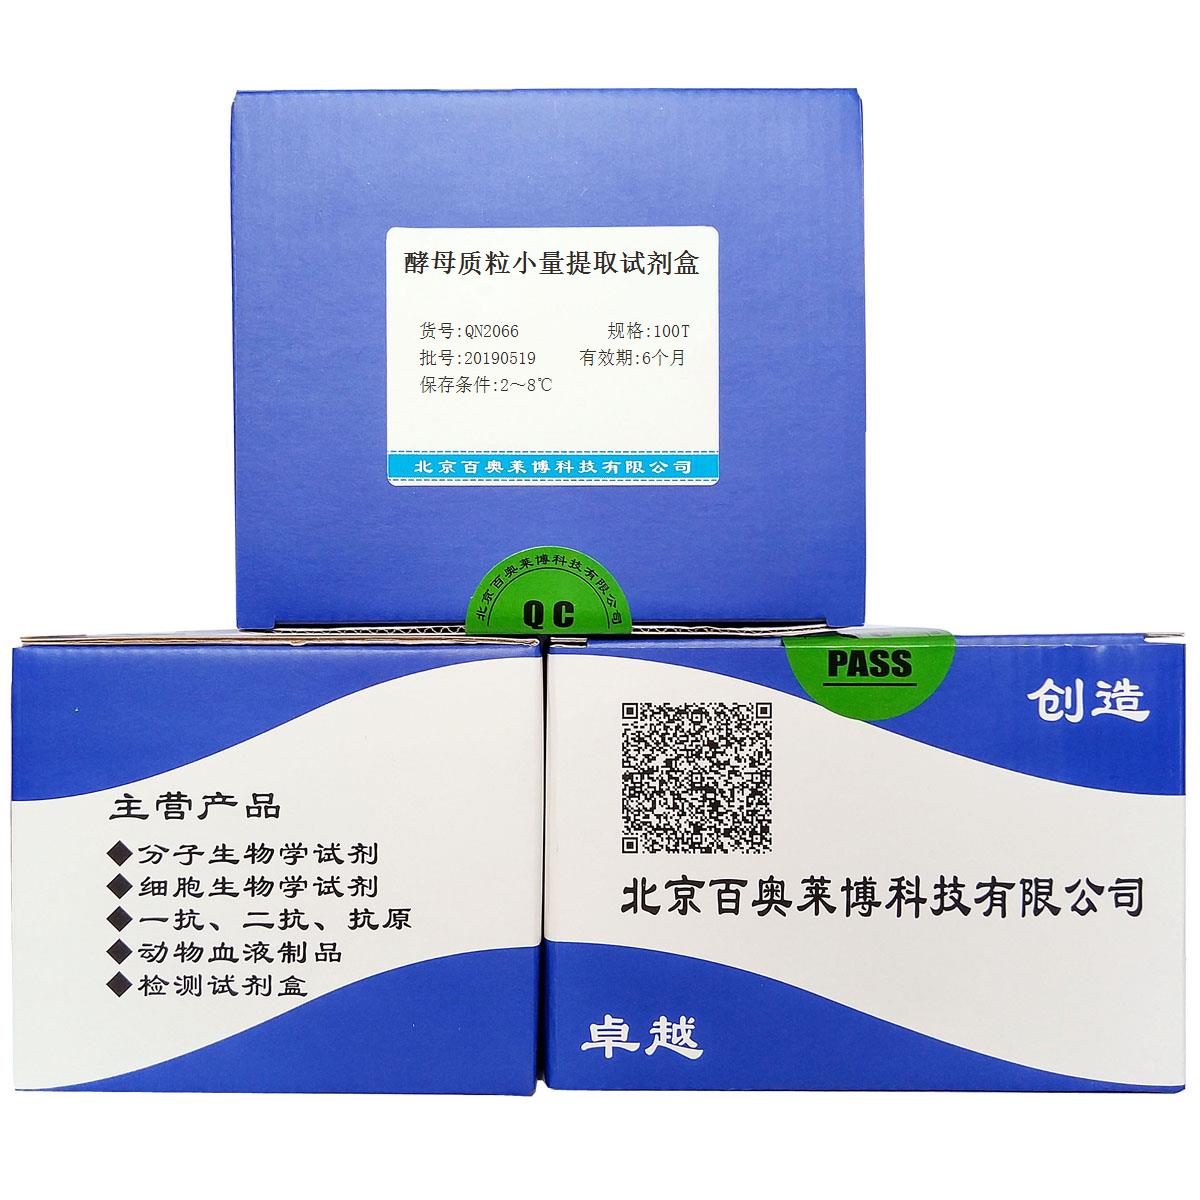 酵母质粒小量提取试剂盒北京现货